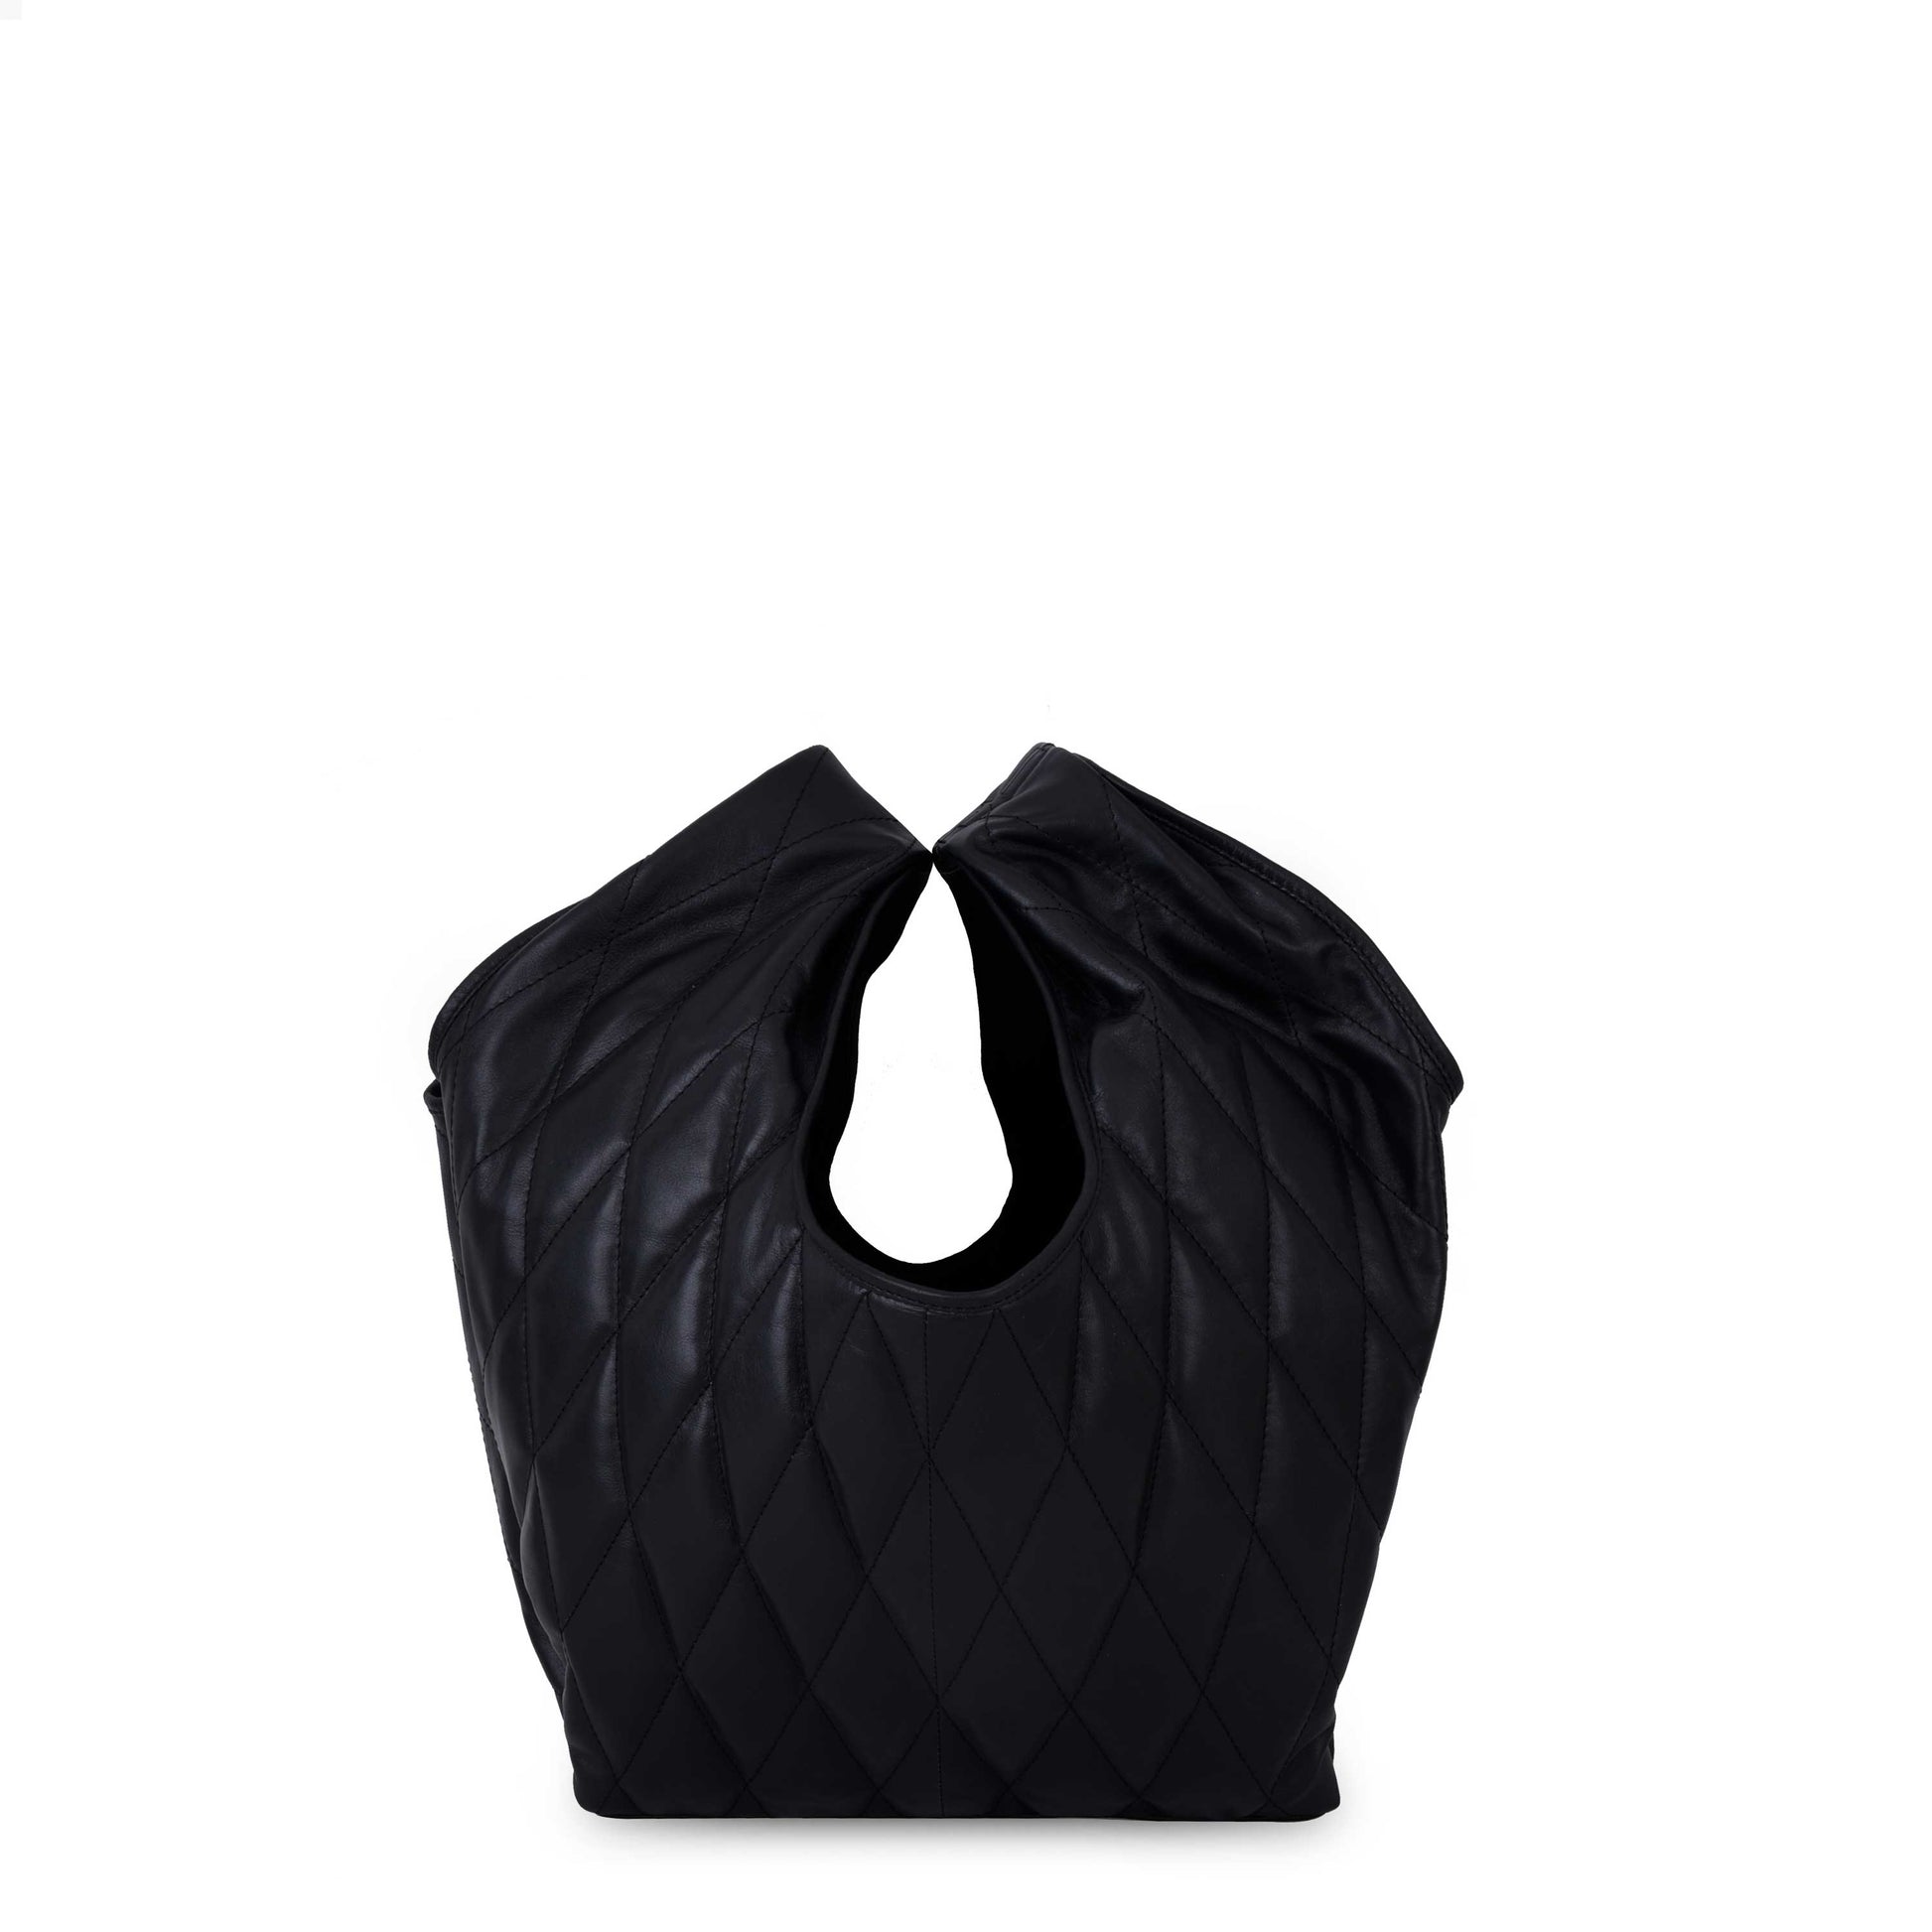 Núnoo Poppy Quilt Black Small bag Black